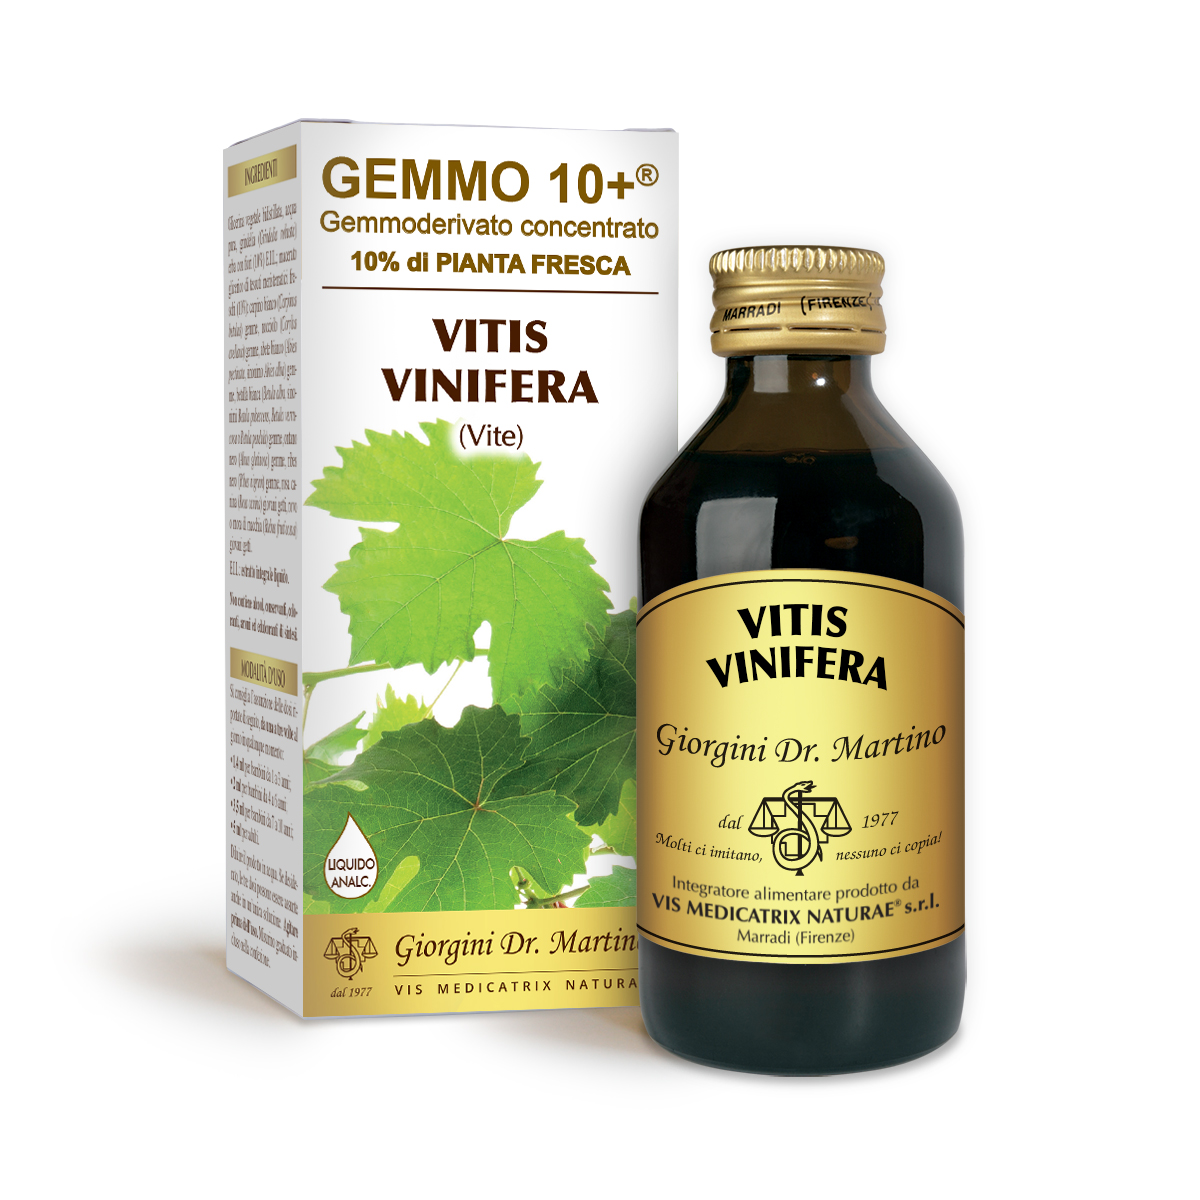 VITE G10+ (Vitis vinifera)